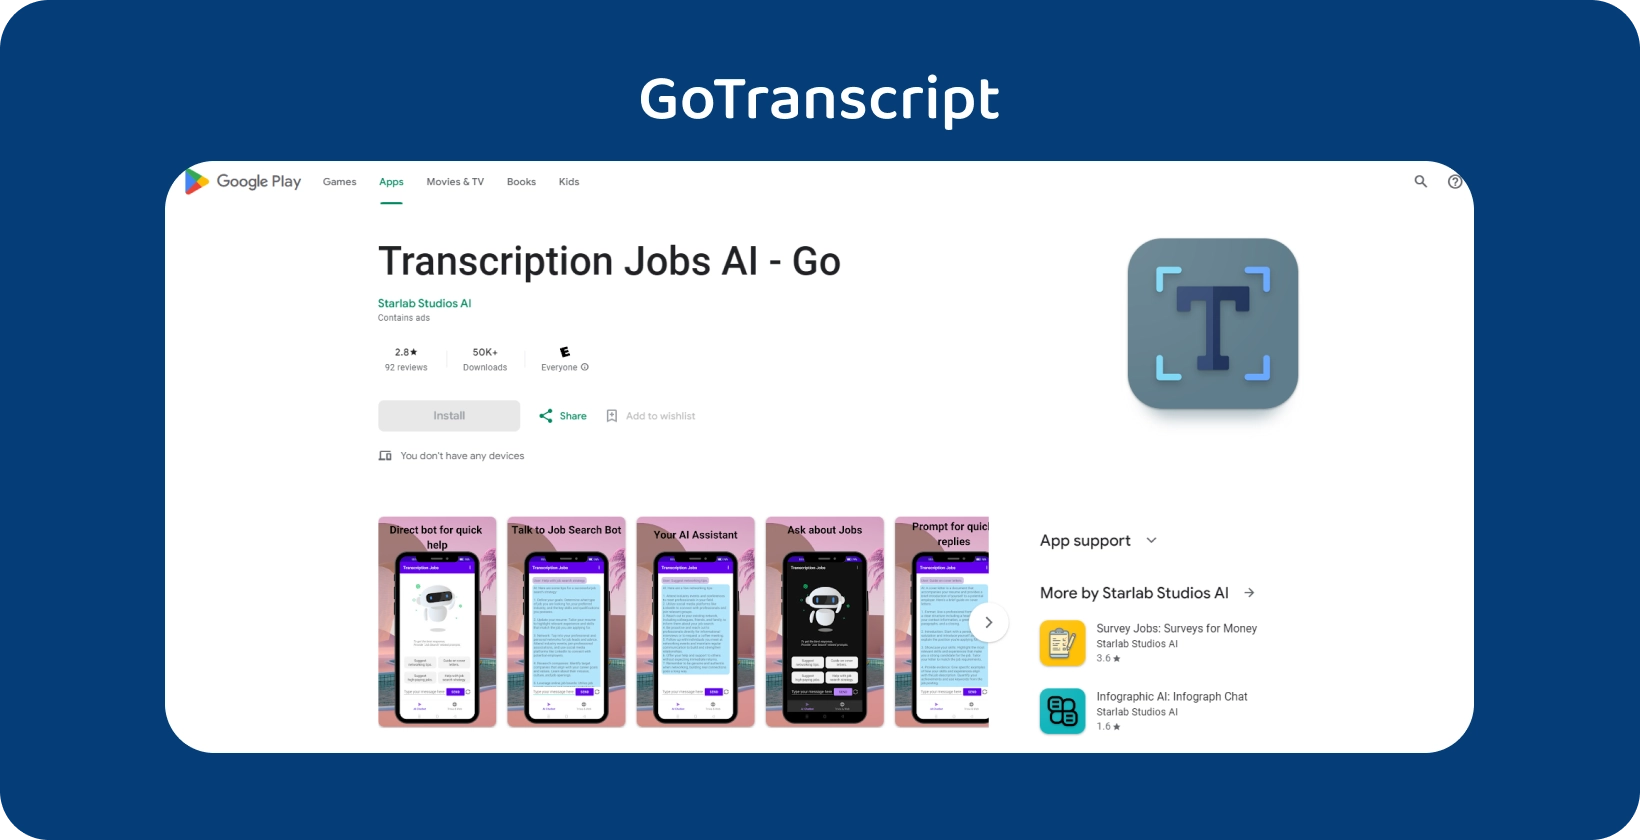 Приложение GoTranscript в Google Play, предназначенное для управления заданиями транскрипции с интуитивно понятным мобильным интерфейсом.